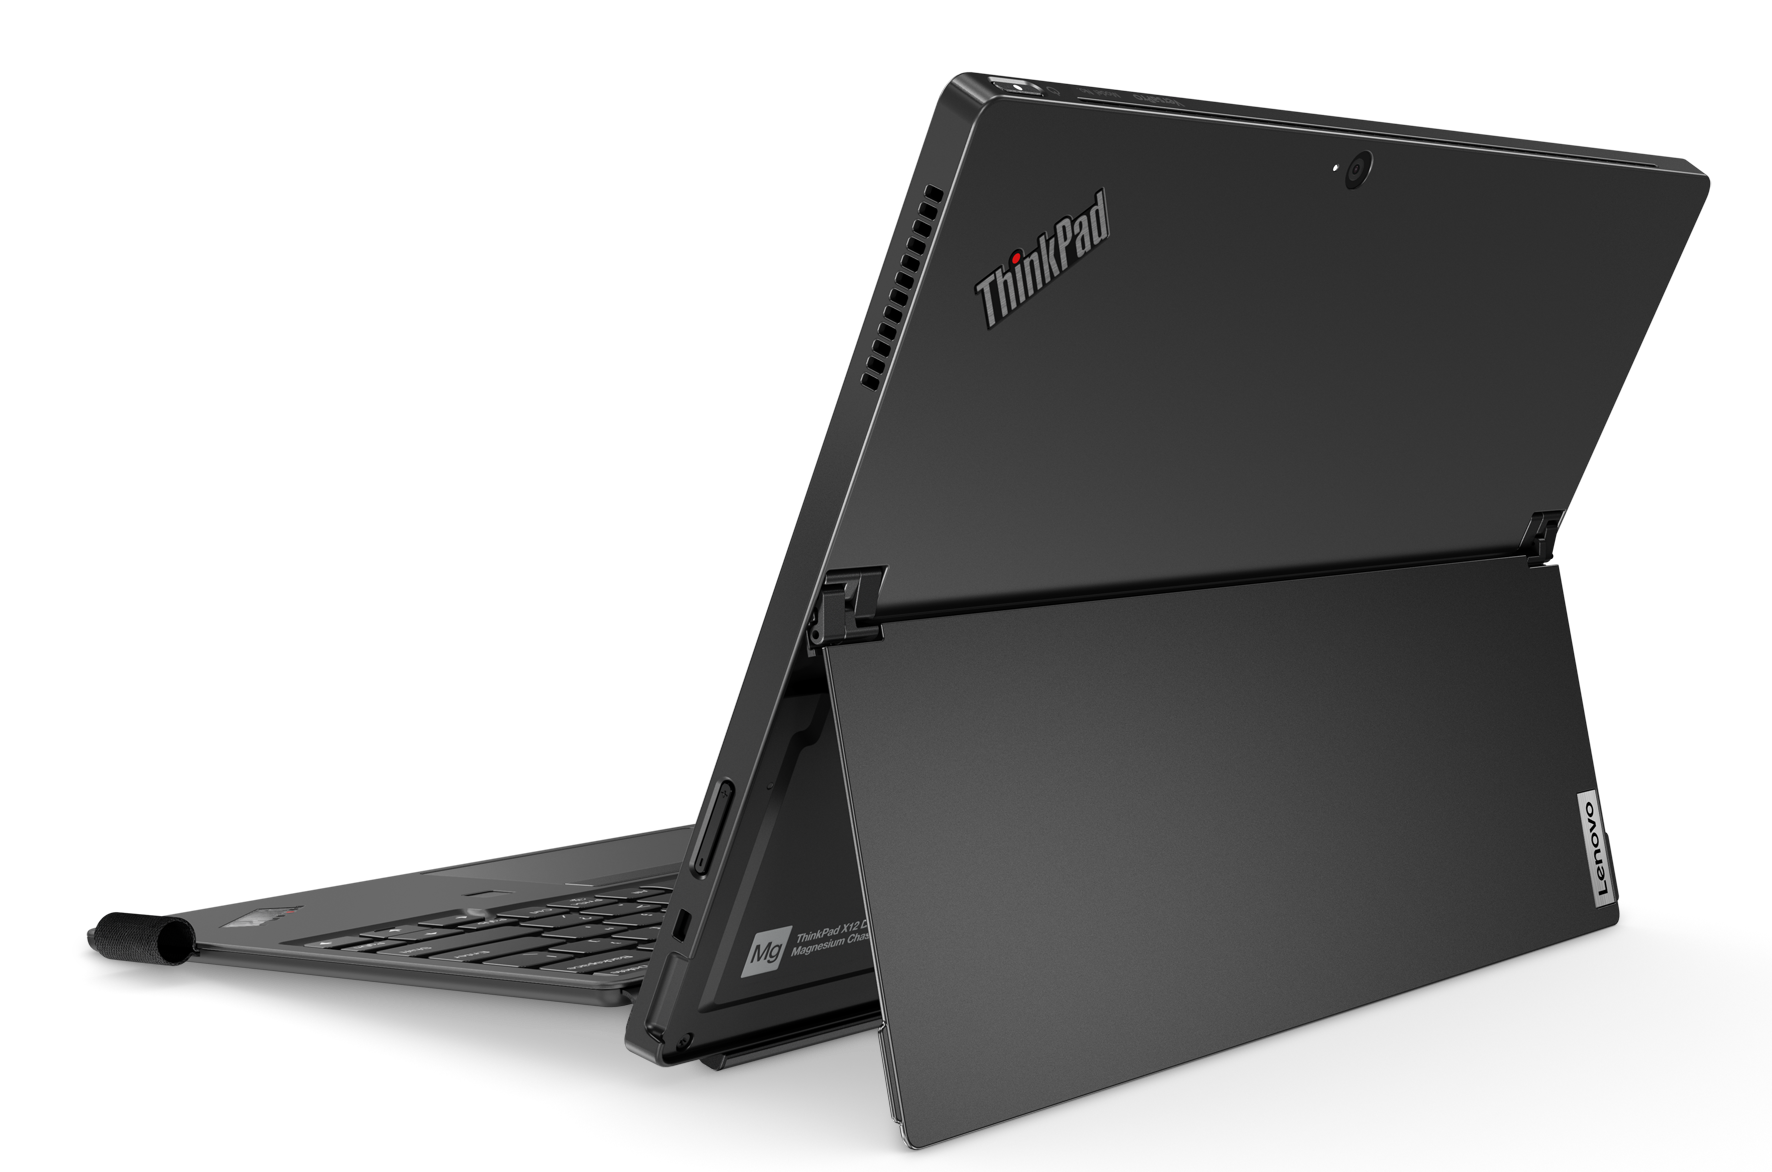 ThinkPad X12 Detachable 04 CES 2021: Lenovo launches ThinkPad X12 Detachable Tablet